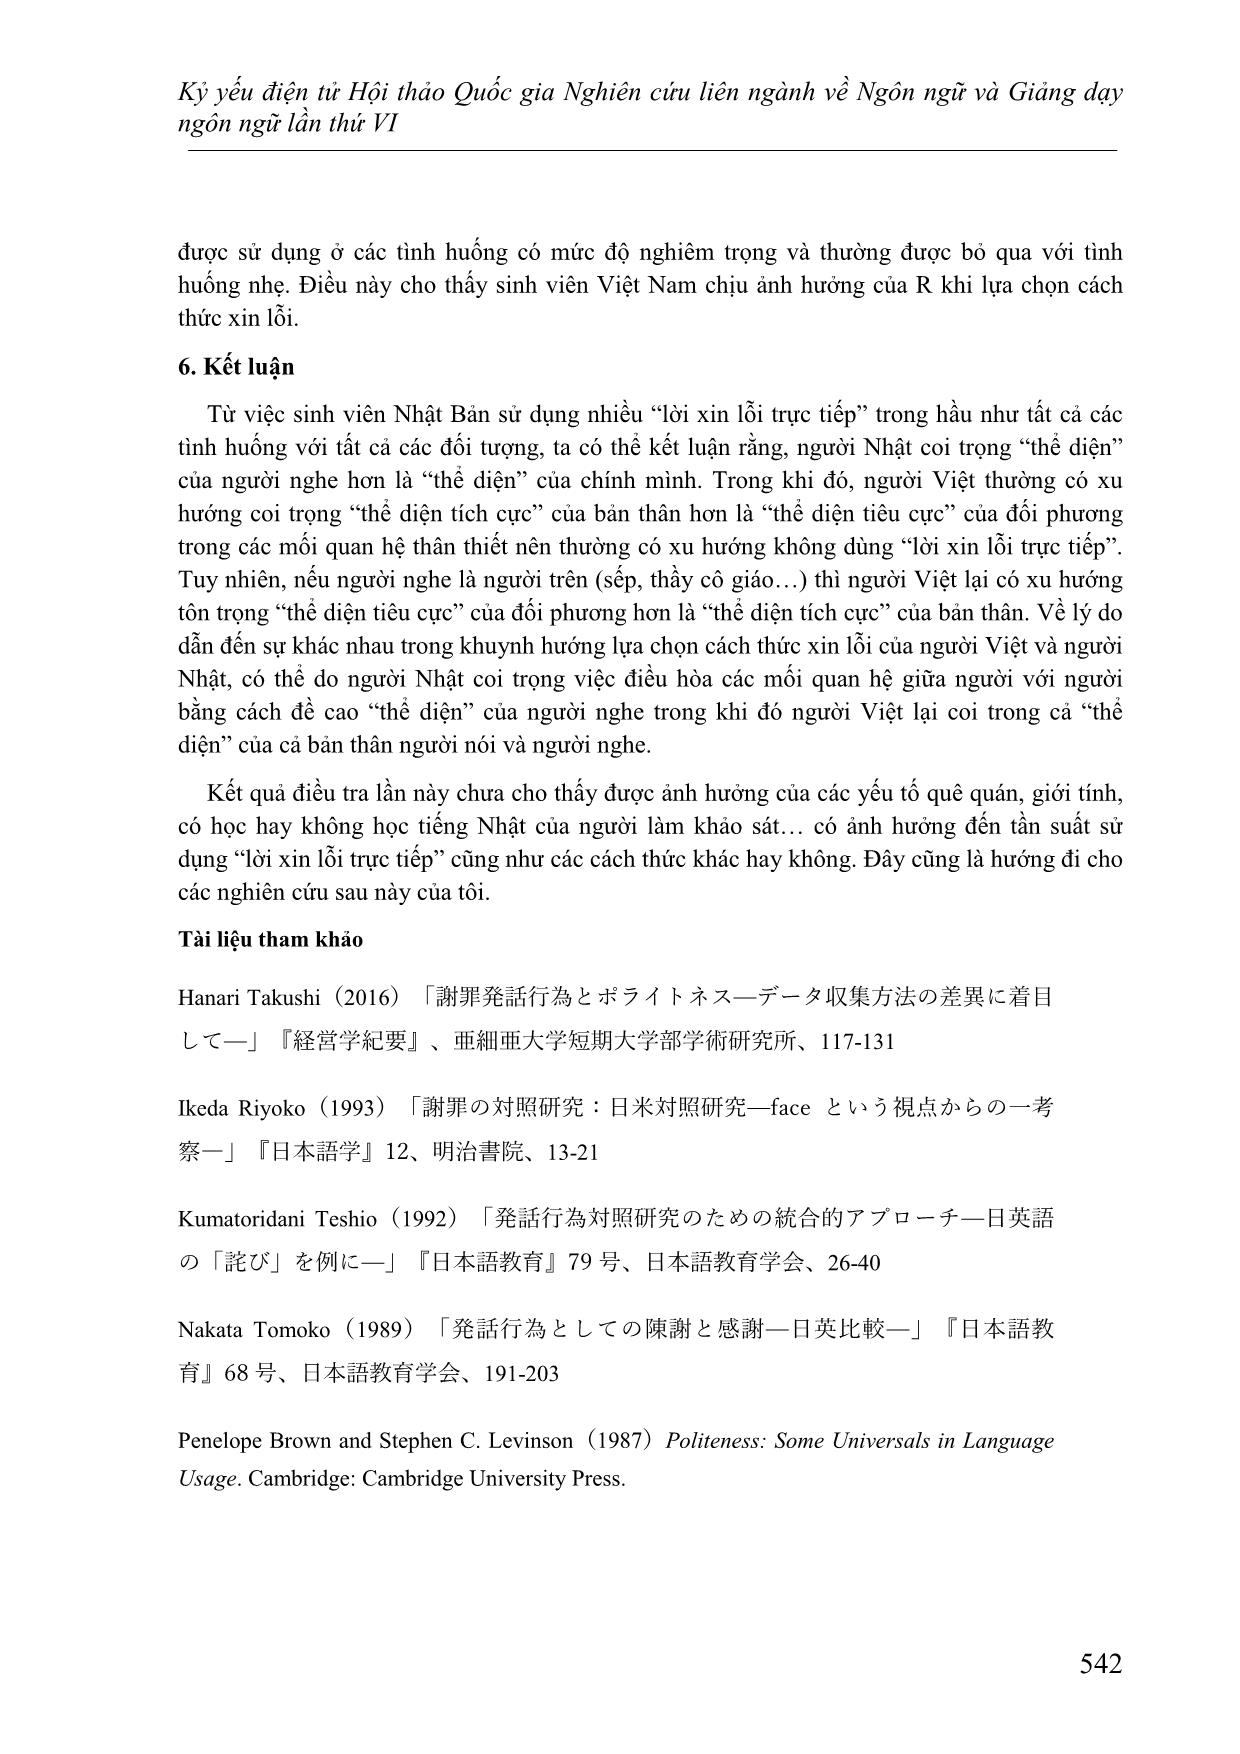 Các cách thức xin lỗi trong tiếng Việt và tiếng Nhật - Đối chiếu dựa trên lý thuyết lịch sự của Brown và Levinson trang 10